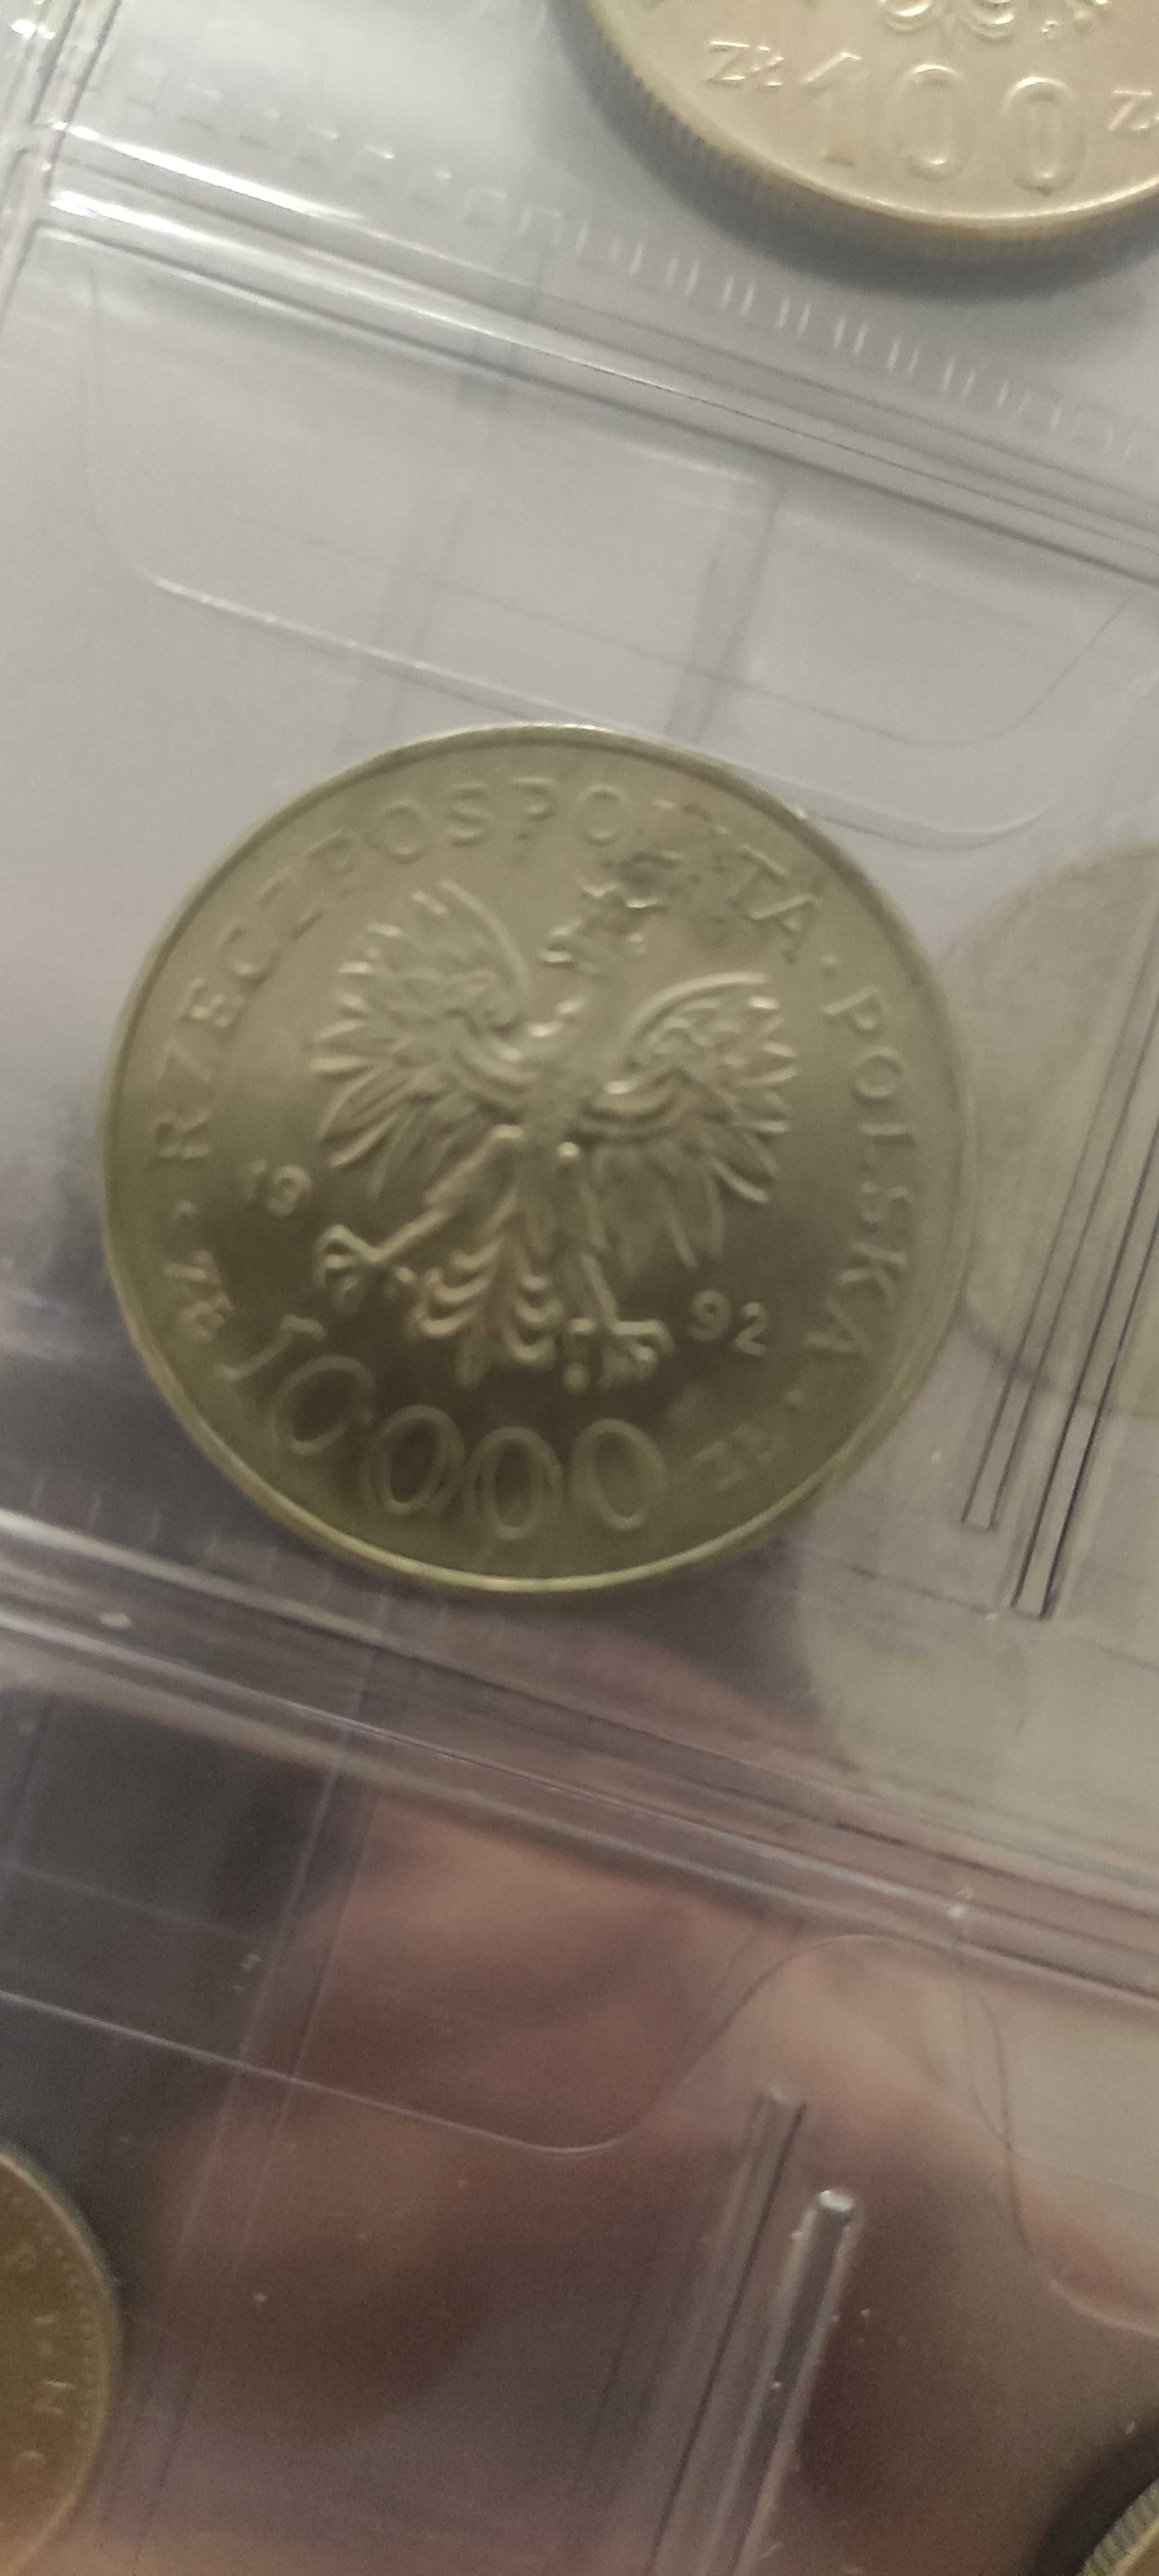 moneta warneńczyk 10000zł